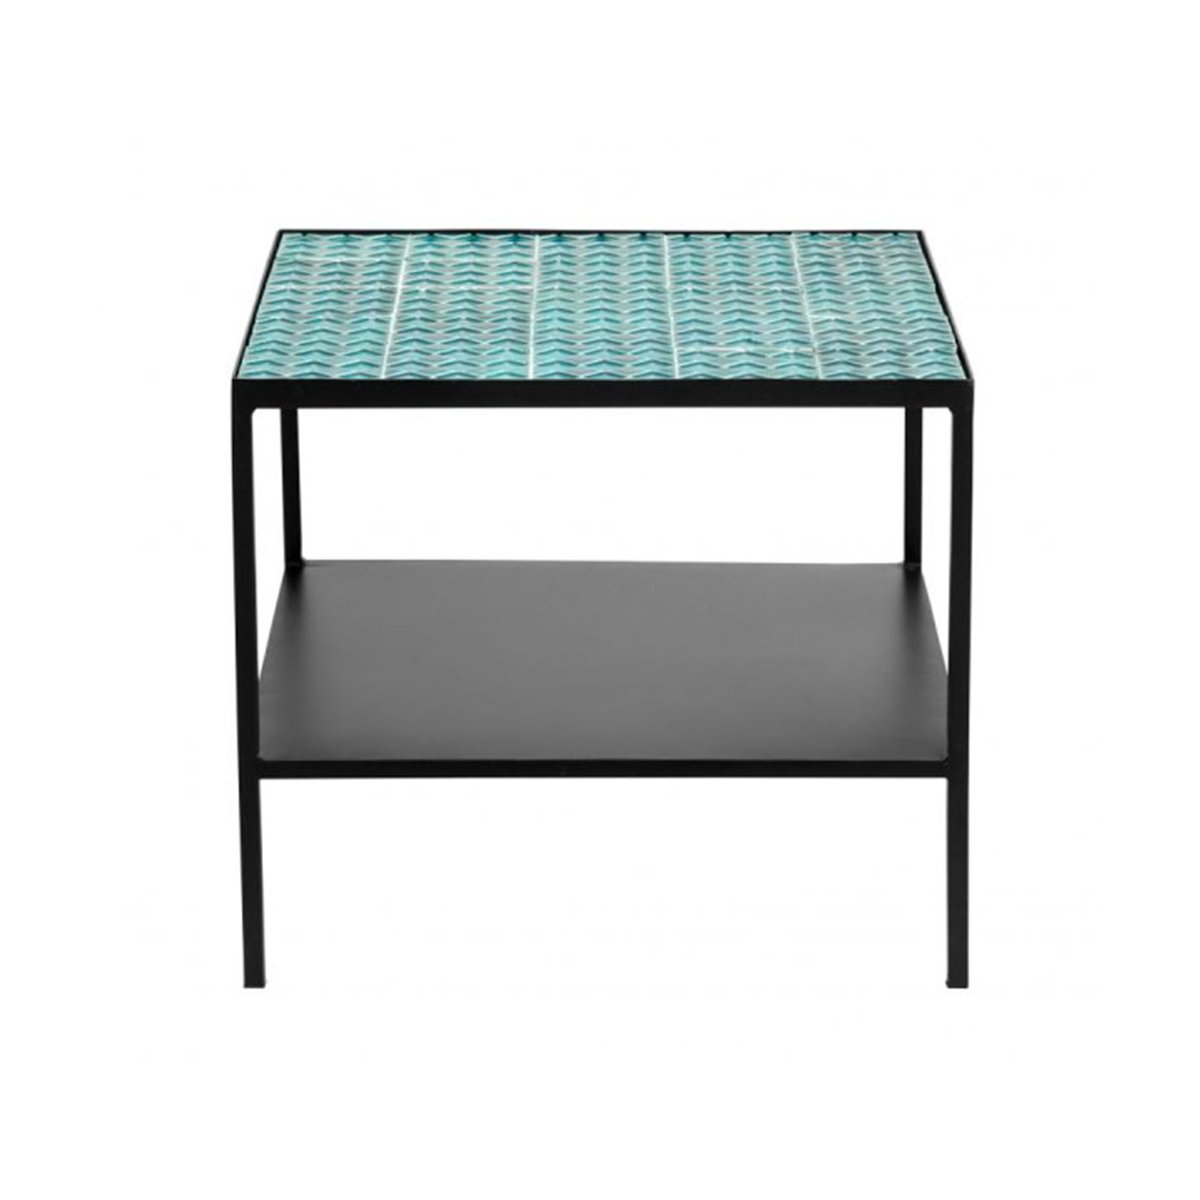 Table basse design mosaique et mÃ©tal - Nordal